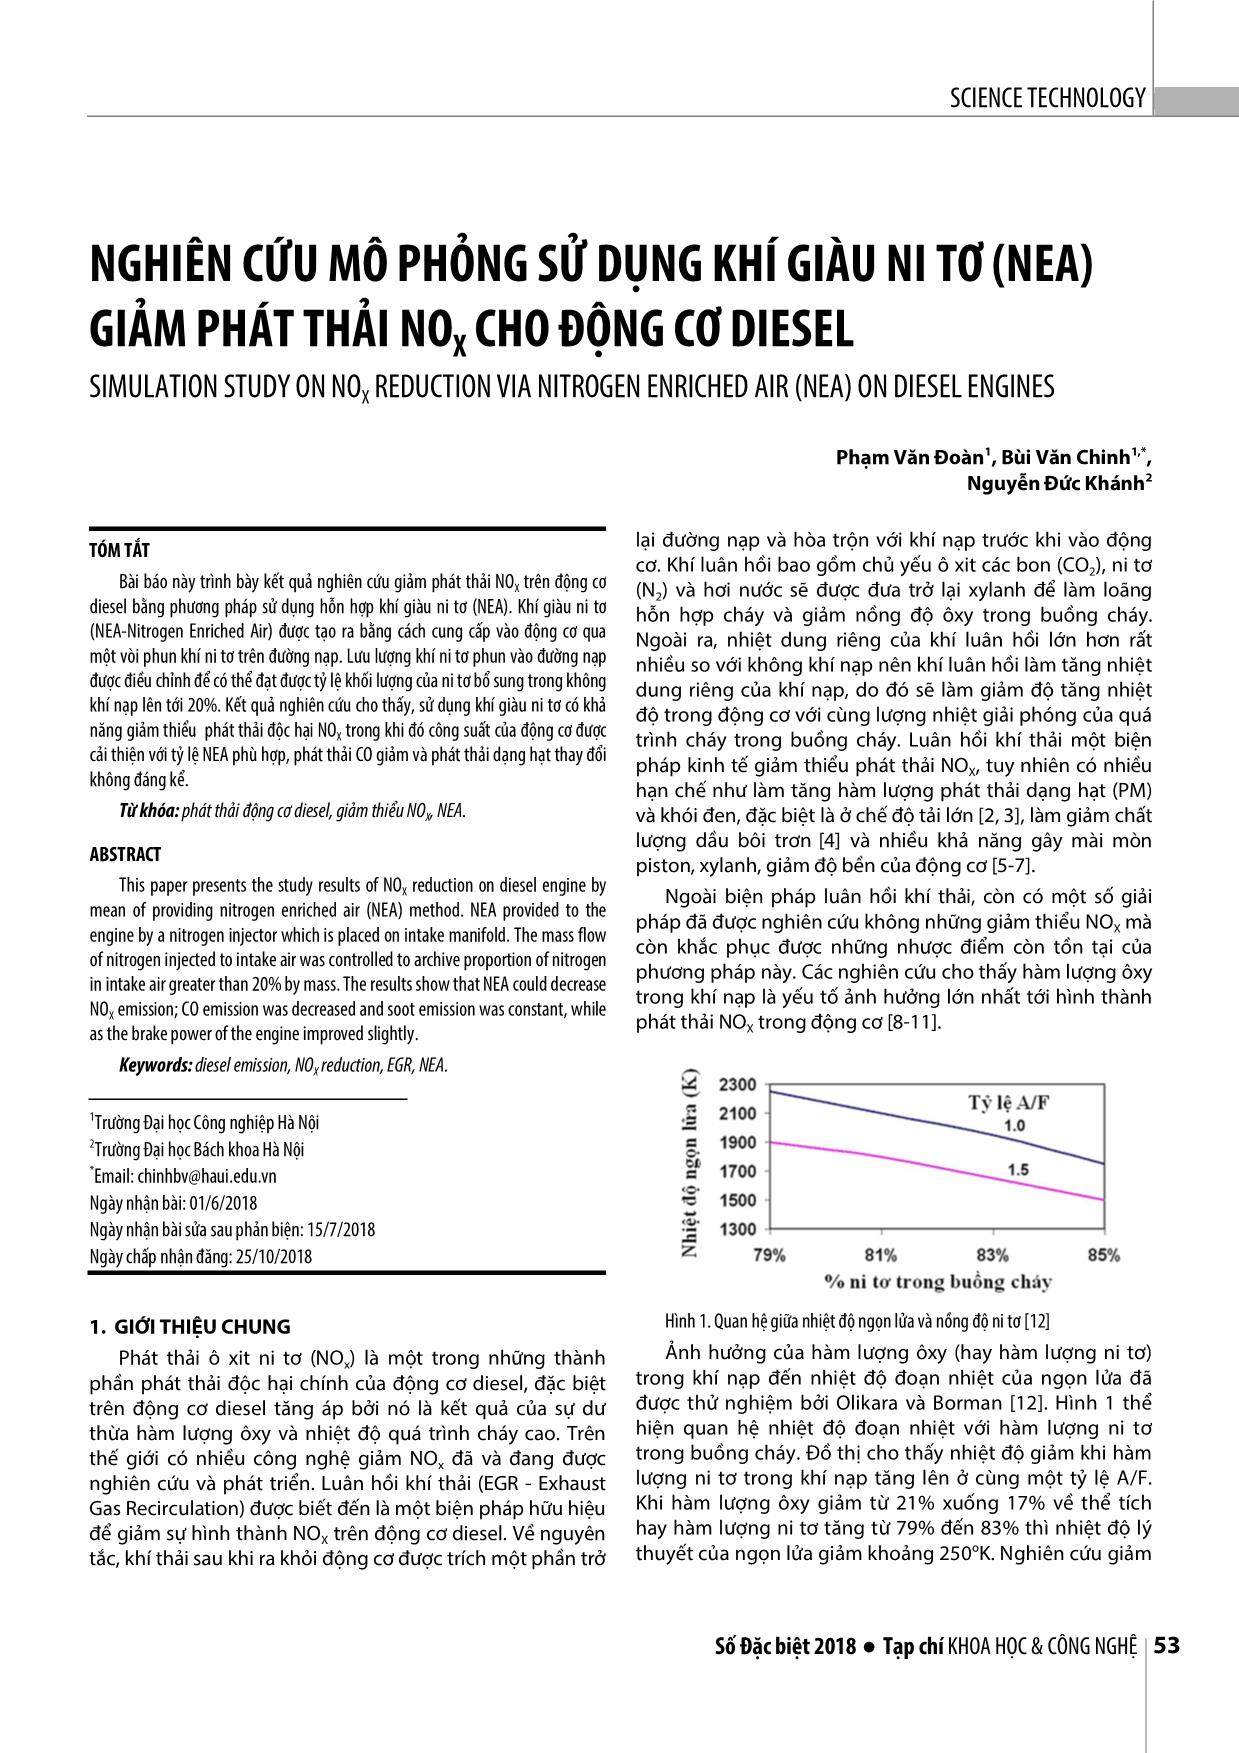 Nghiên cứu mô phỏng sử dụng khí giàu ni tơ (nea) giảm phát thải nox cho động cơ diesel trang 1